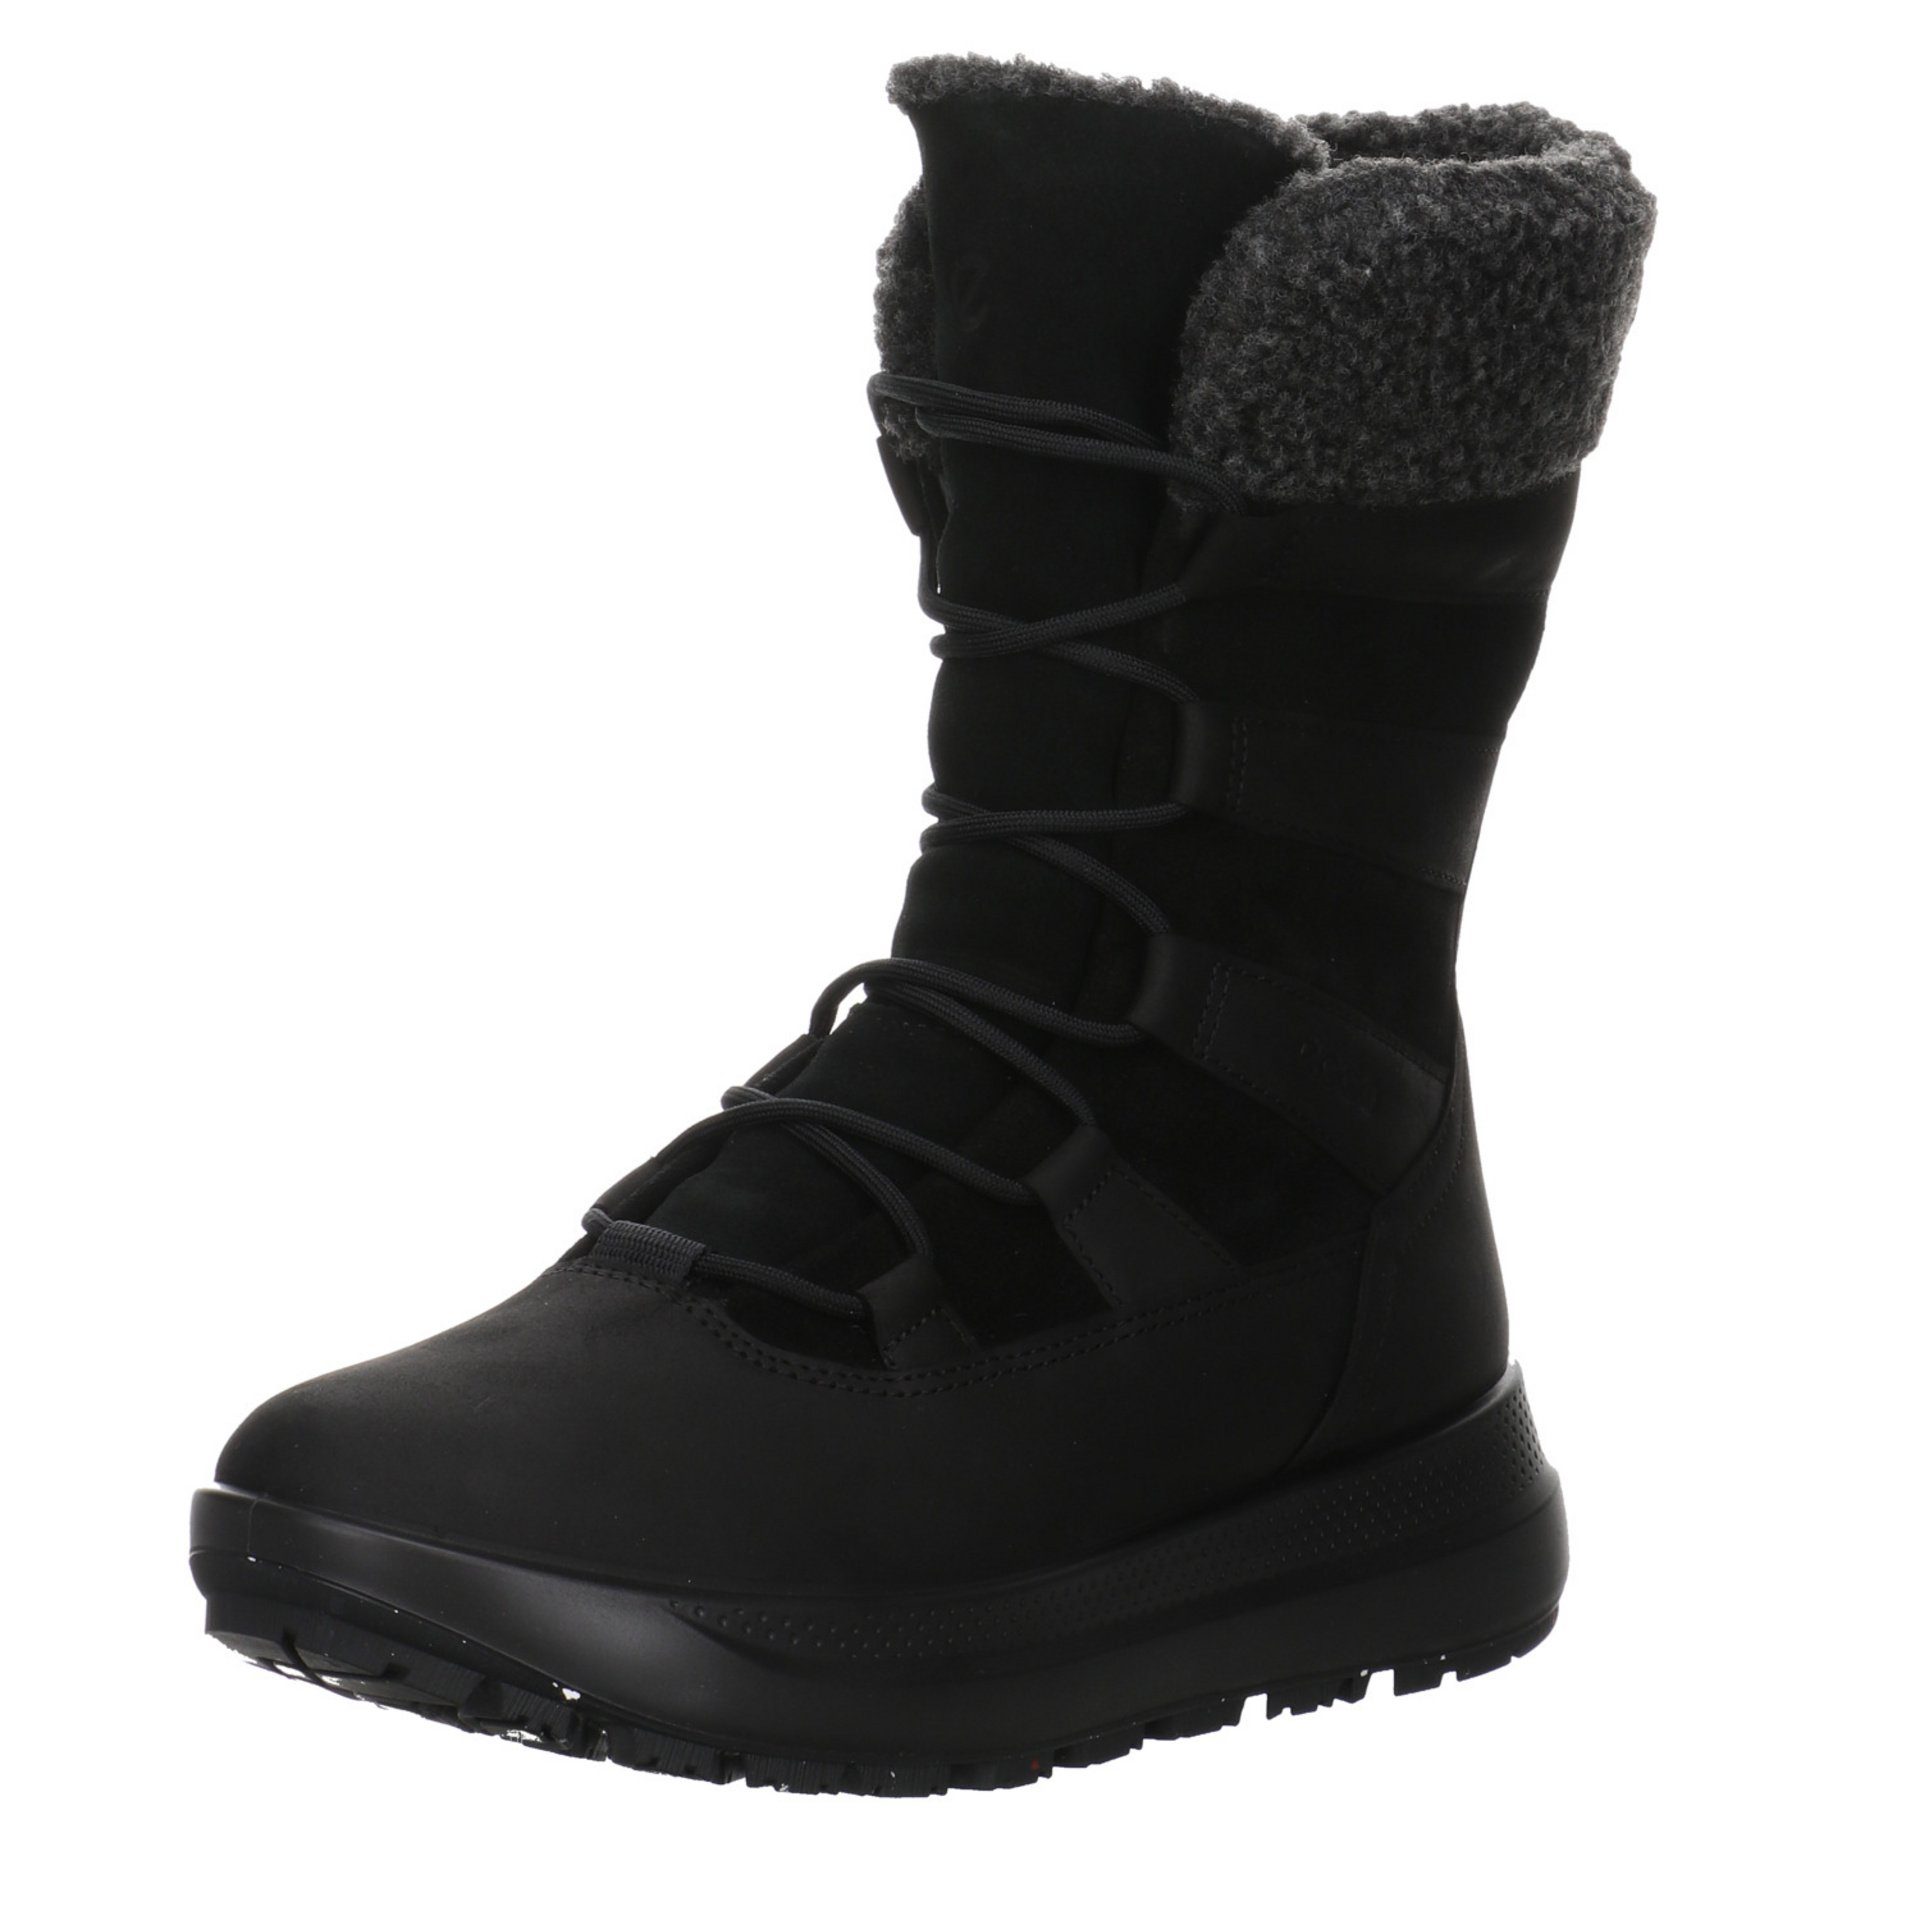 Ecco Damen Stiefel Schuhe Solice Boots Elegant Freizeit Stiefel Leder-/Textilkombination BLACK/BLACK